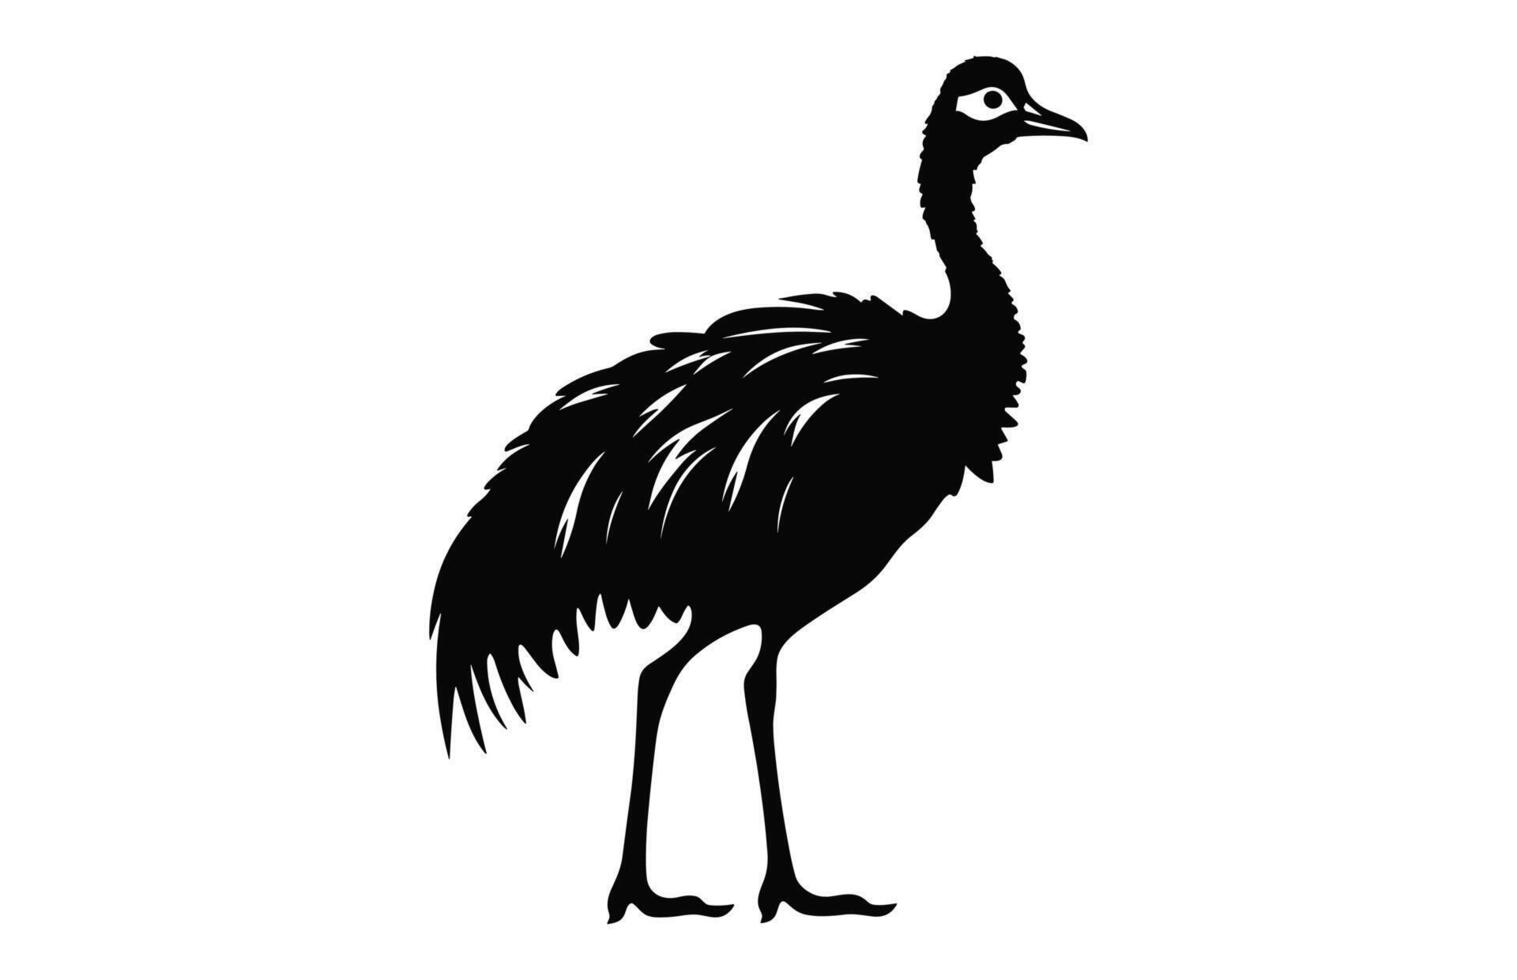 émeu silhouette isolé sur une blanc arrière-plan, une autruche émeu noir silhouette, australien émeu oiseau vecteur